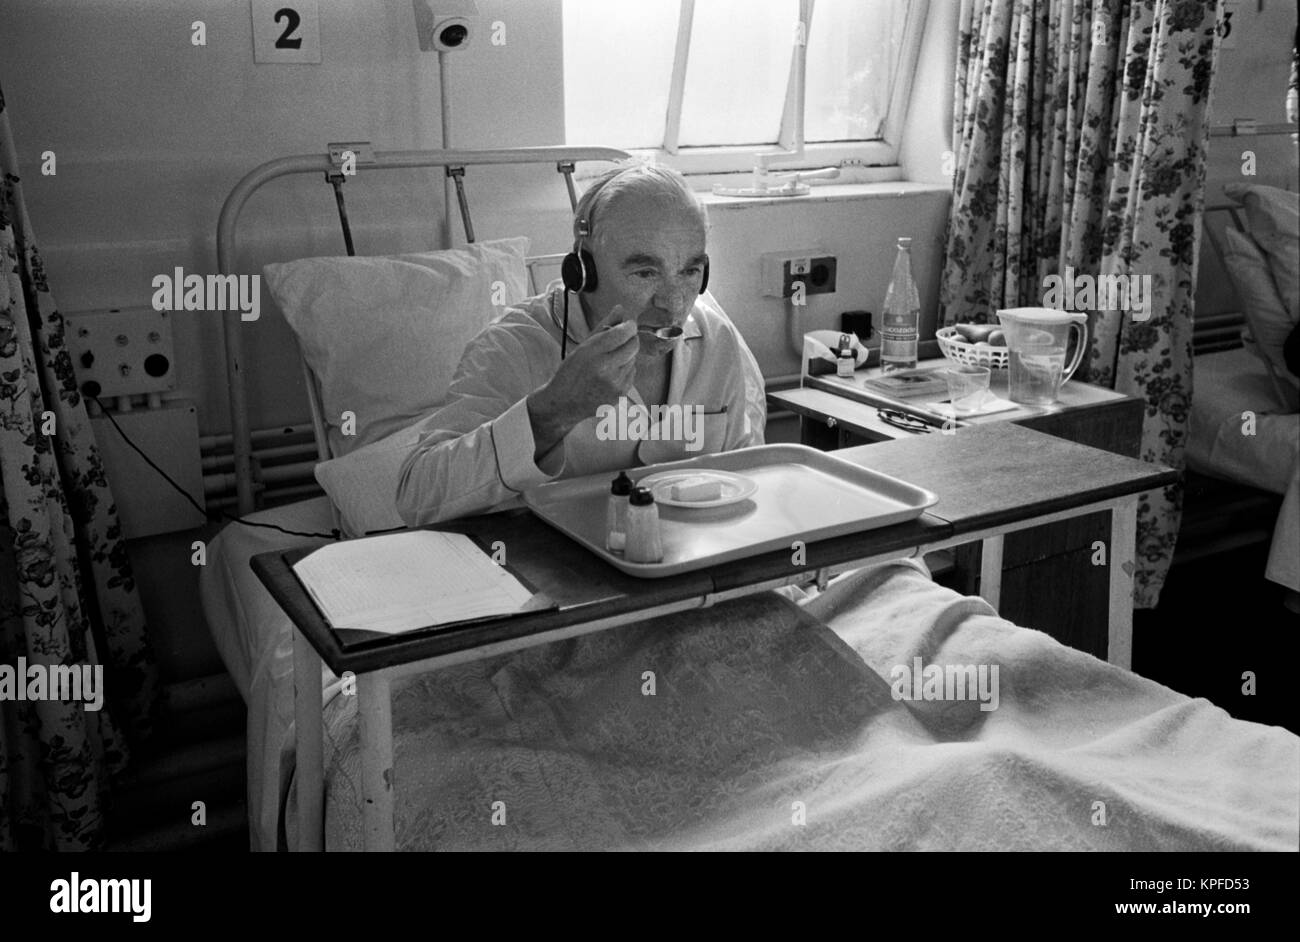 Das 1970er National Health Service (NHS) Charing Cross Hospital. Ein älterer Mann, der im Bett sitzt und sein Mittagessen isst. Er hört Radio und trägt Kopfhörer. Fulham, London, England, ca. 1972. HOMER SYKES Stockfoto